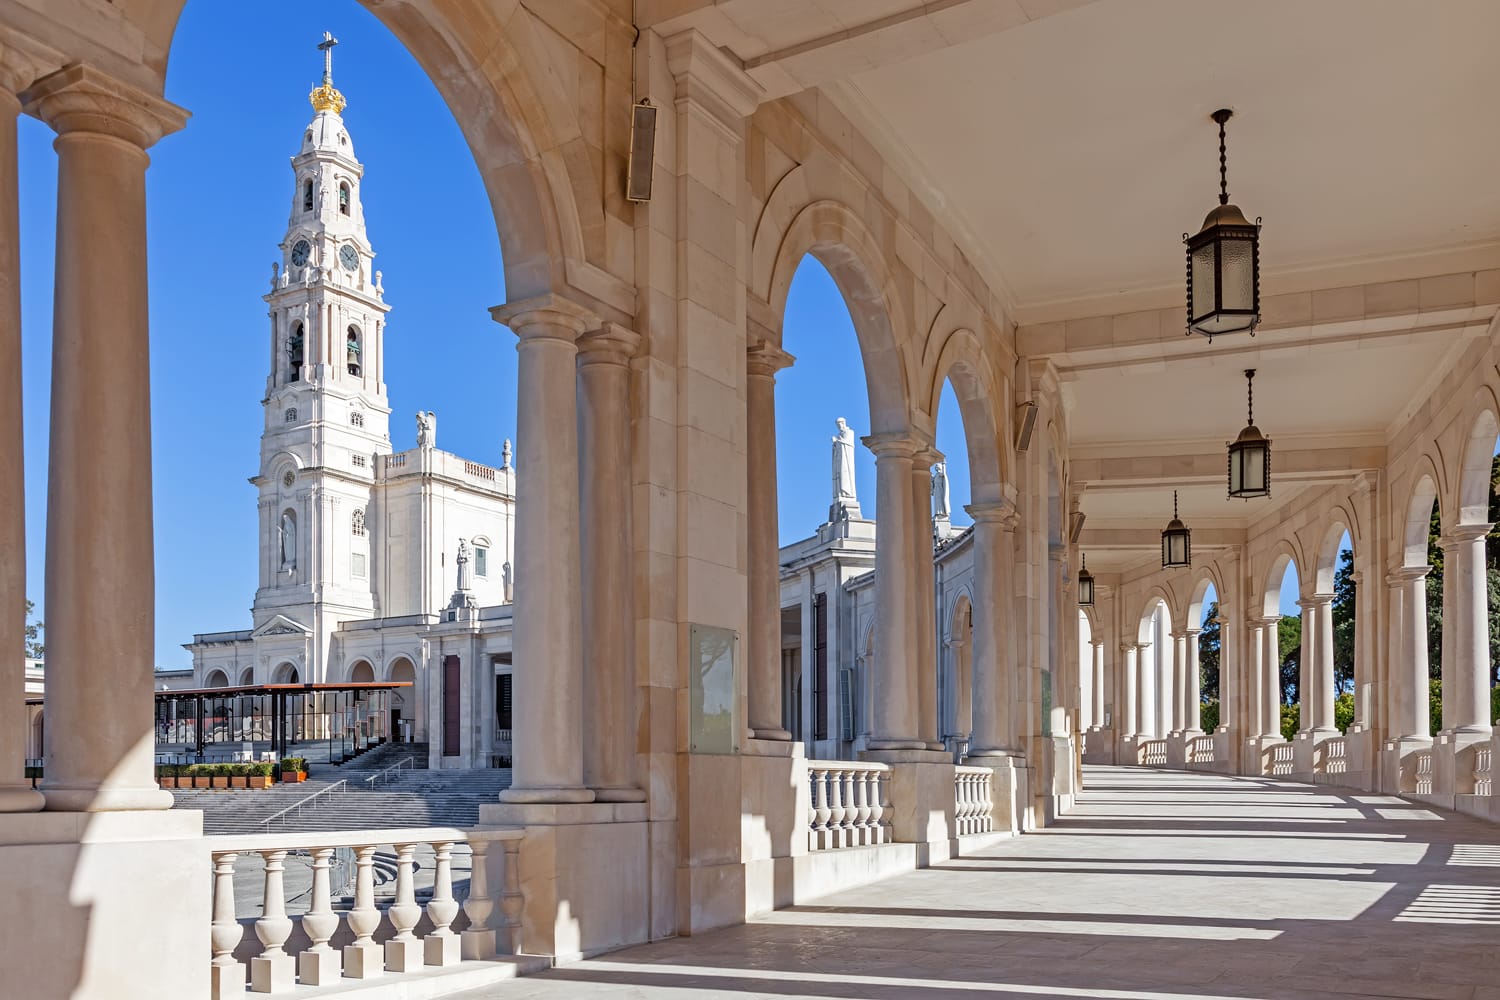 Tempat Suci Fatima, Portugal.  Basilika Bunda Rosario dilihat dari dan melalui barisan tiang.  Salah satu kuil Maria yang paling penting dan tempat ziarah bagi umat Katolik